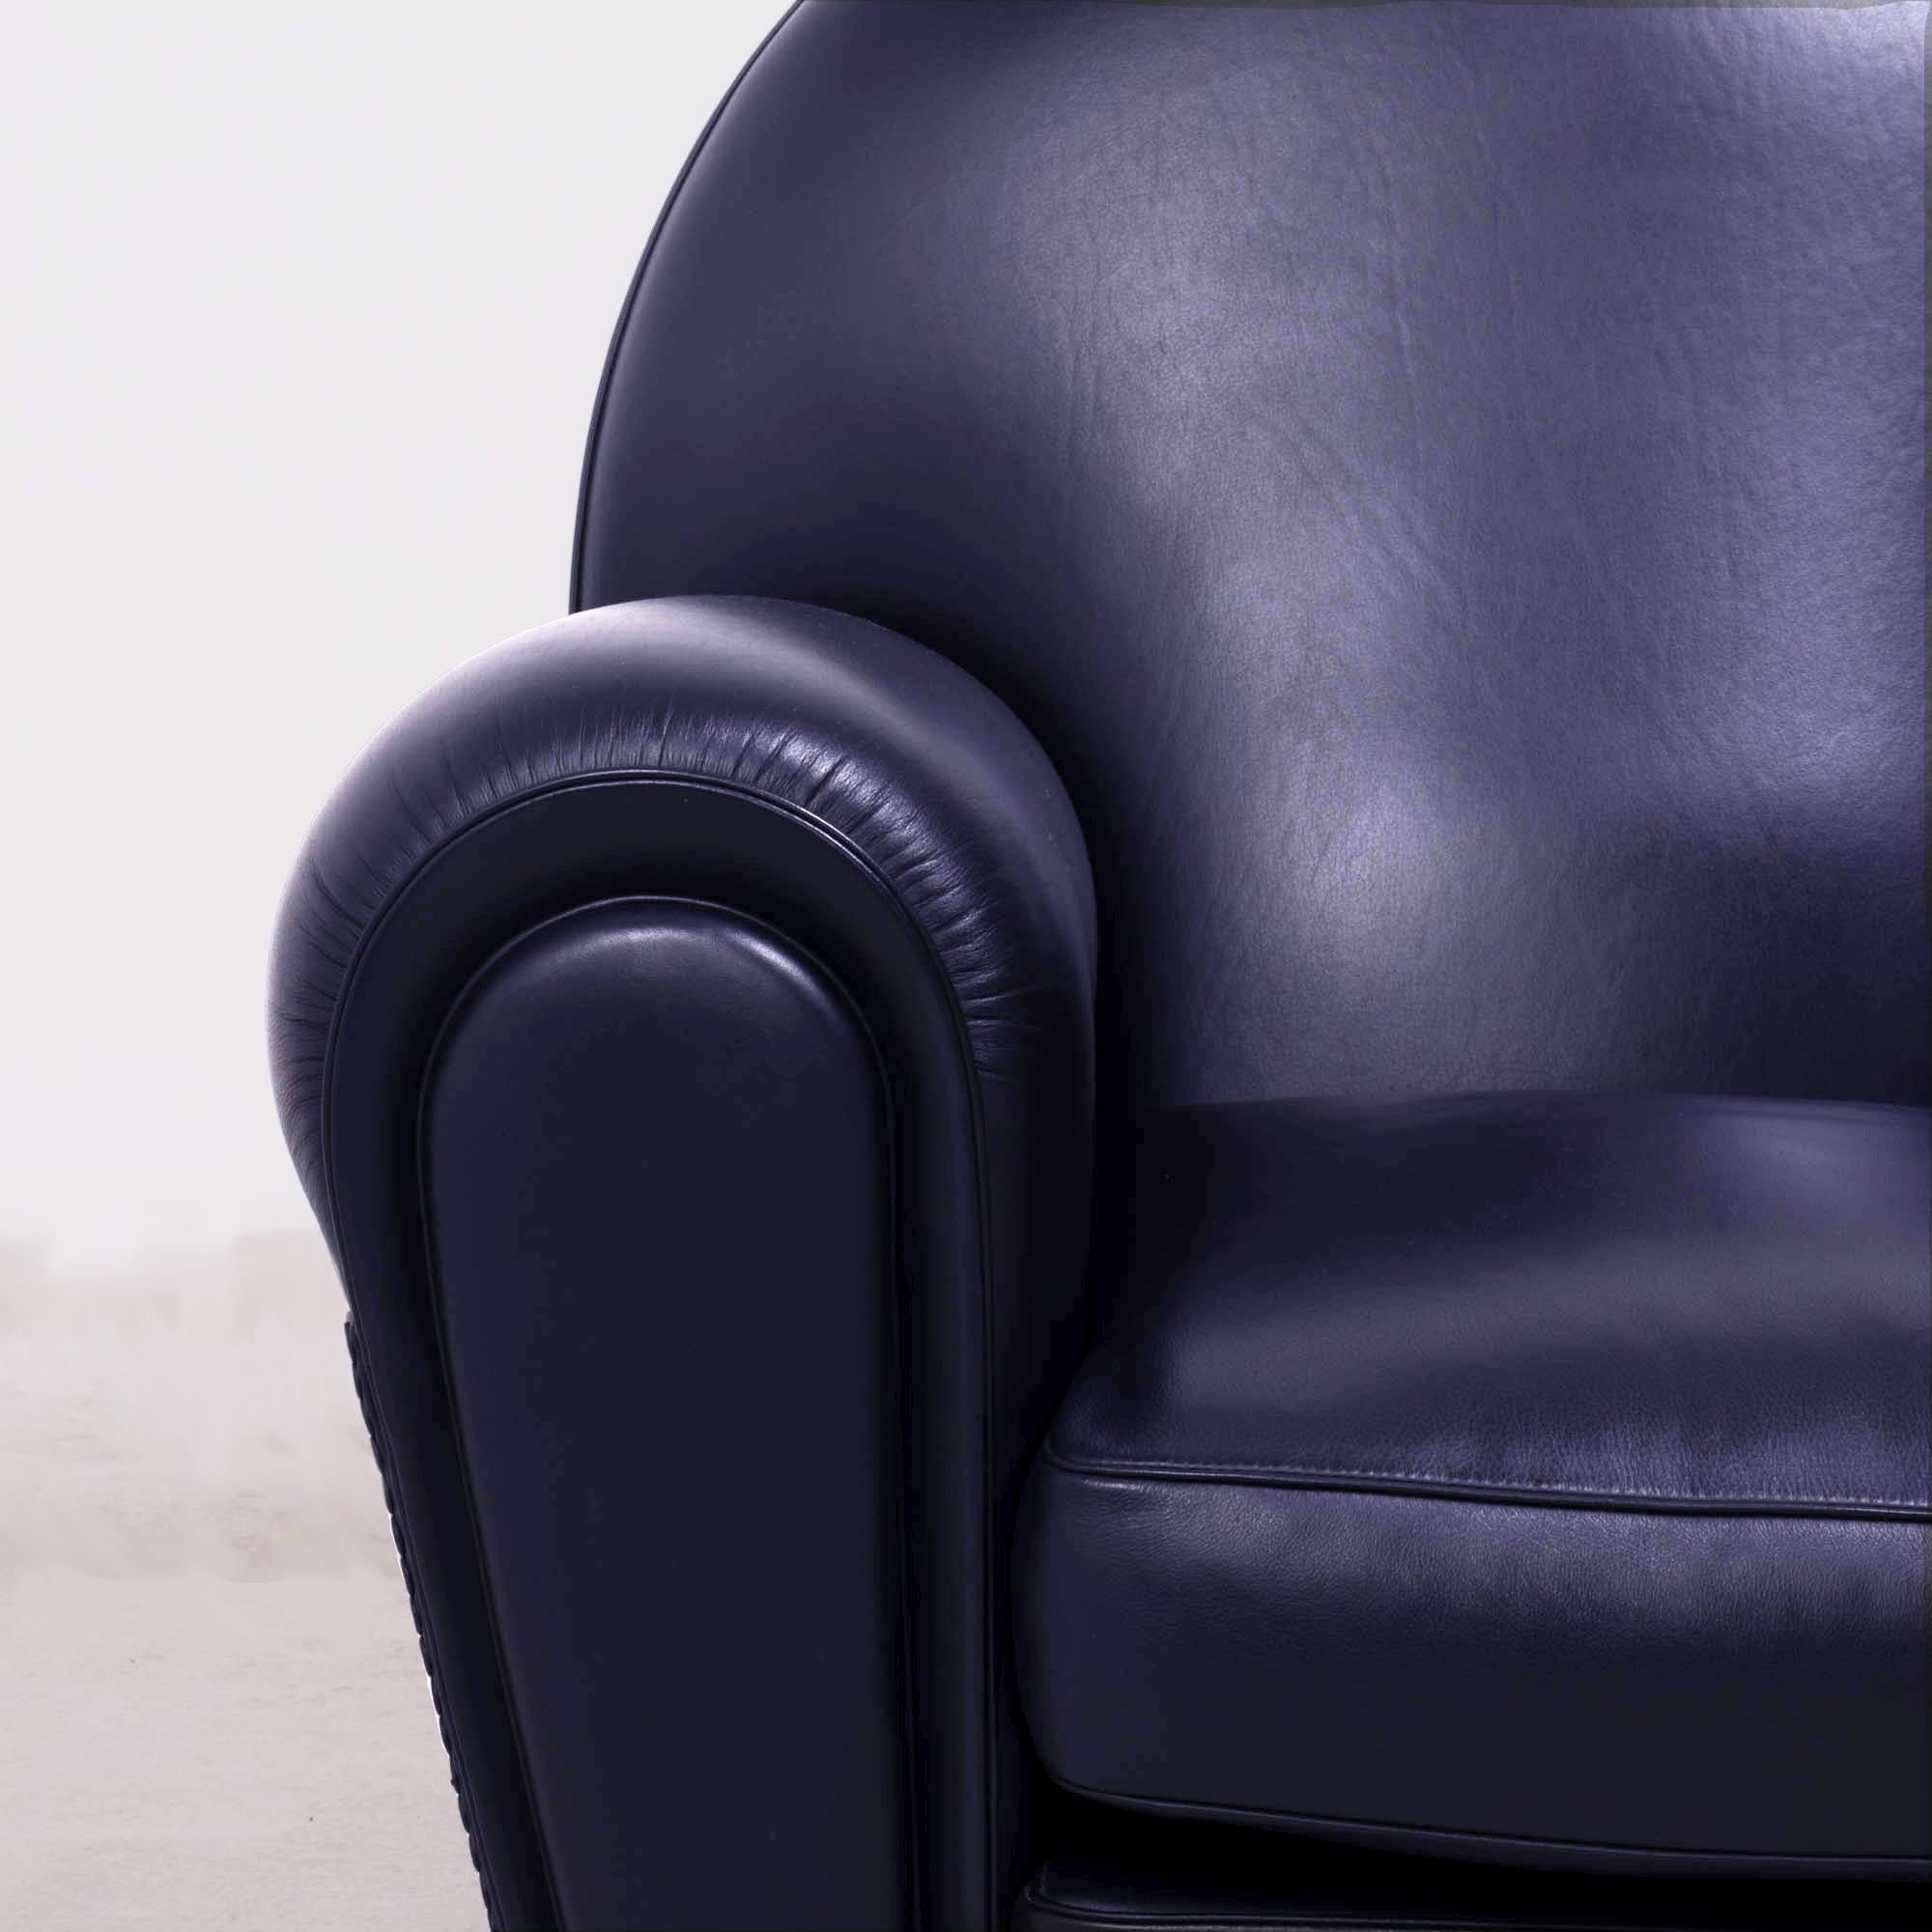 Poltrona Frau, Art Deco style Vanity Fair Black Leather Sofa and armchairs set 5